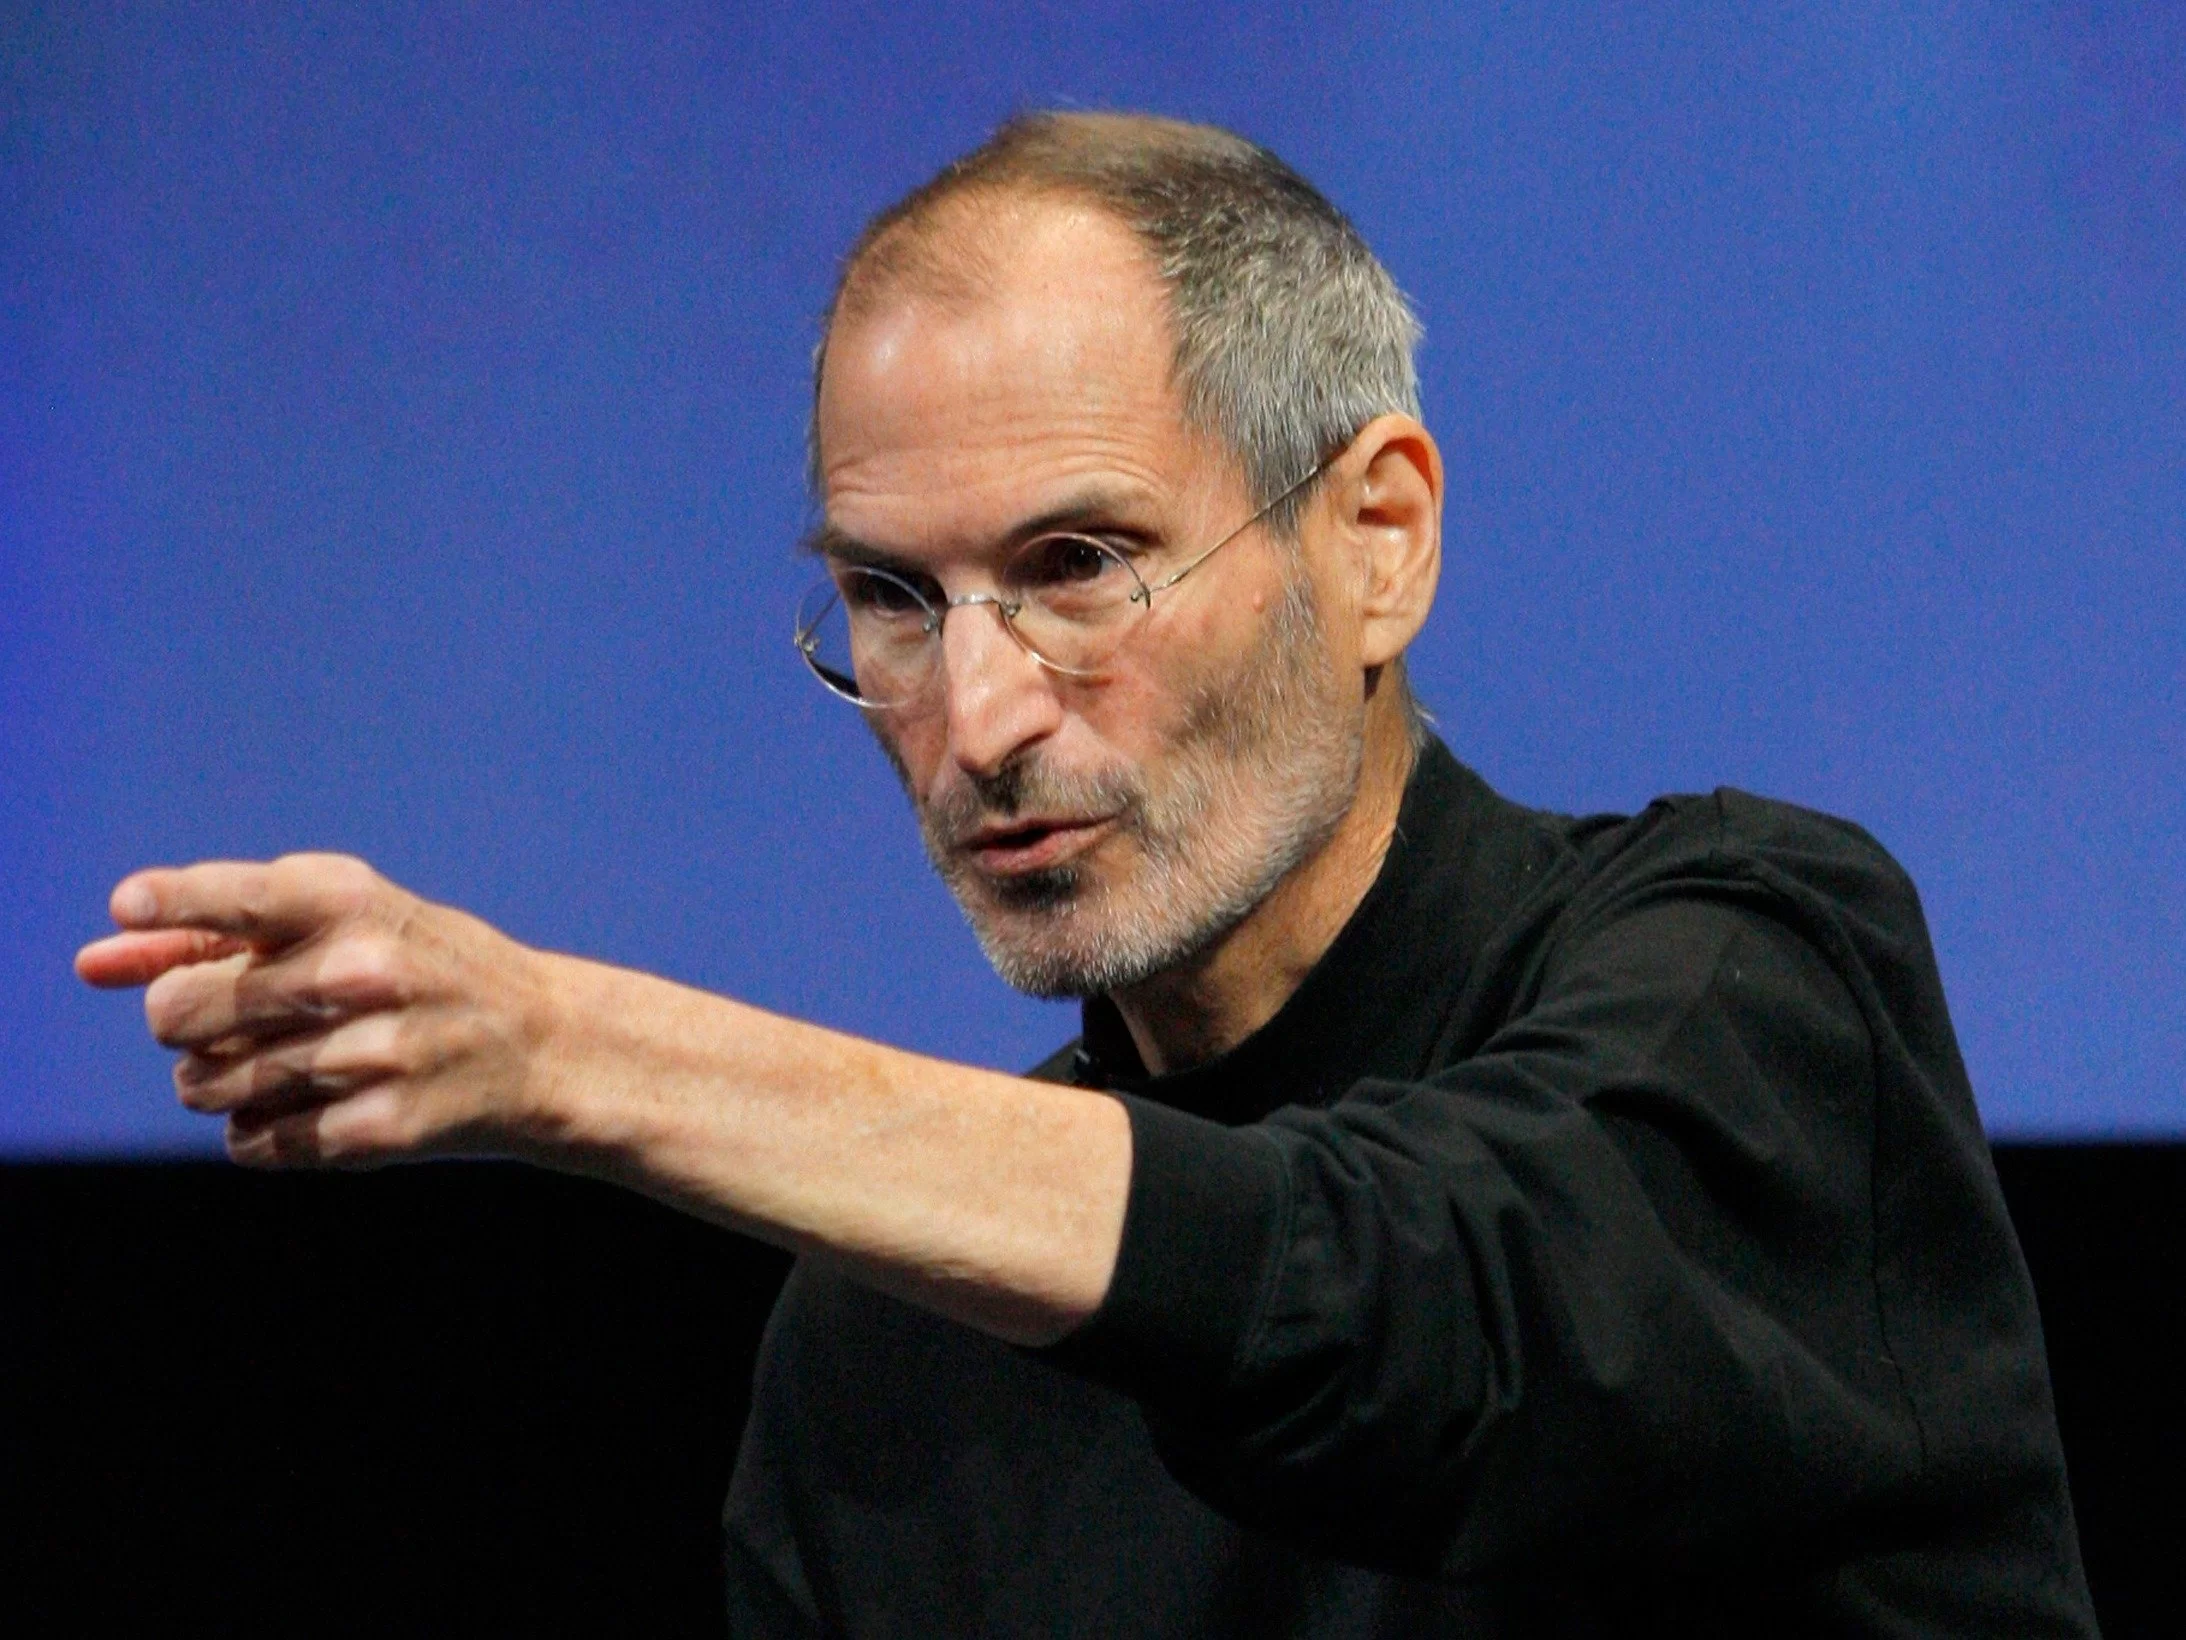 rtr2cktq | Steve Jobs | 3 เทคนิคการประชุมดีๆของ Steve Jobs ที่ทำให้บริษัทประสบความสำเร็จ